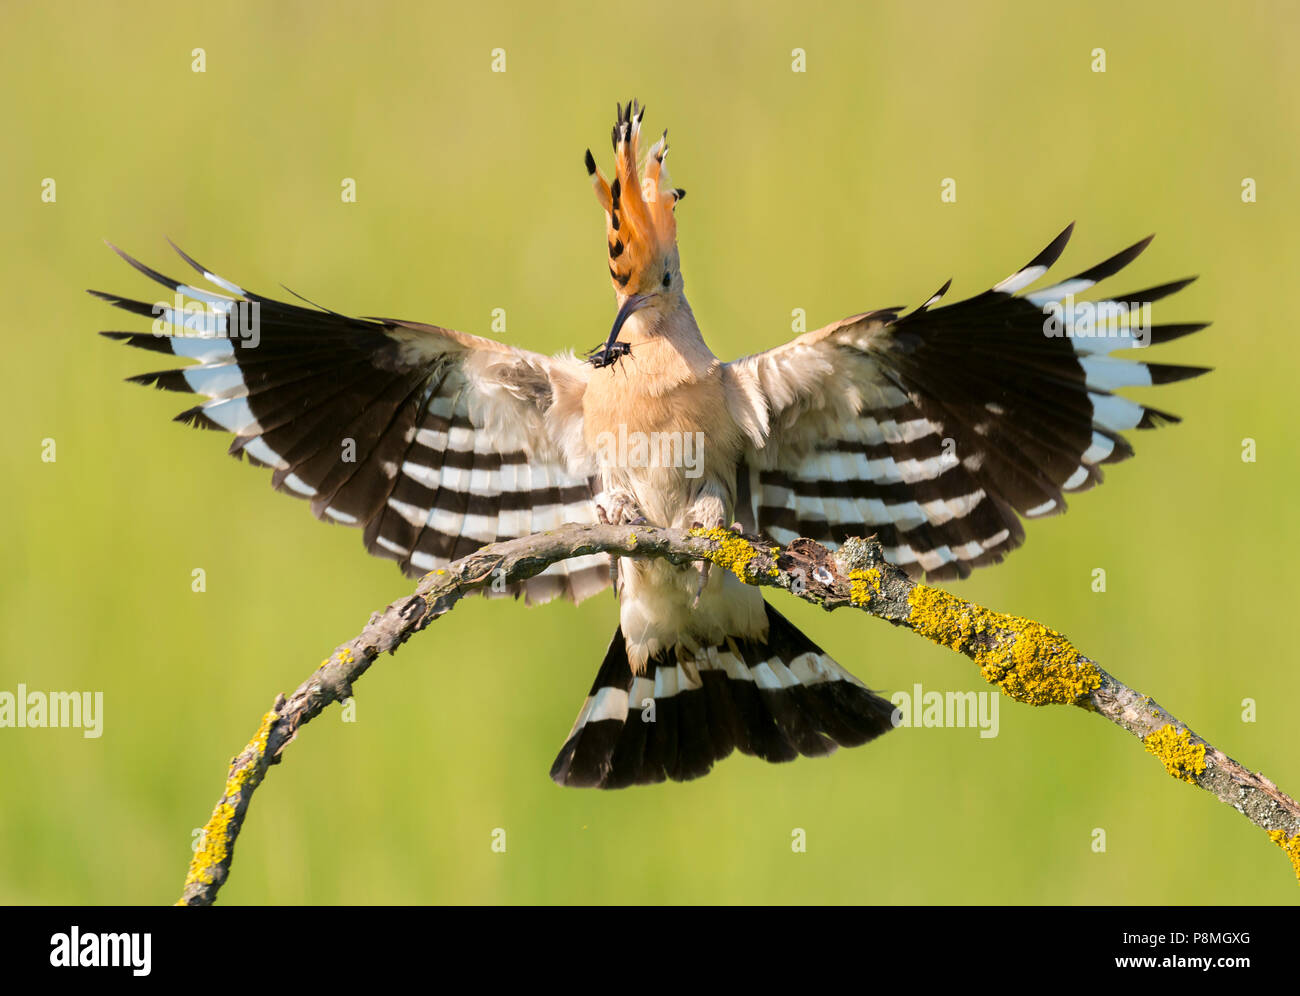 Abubilla aterrizar en la rama con alimentos Foto de stock